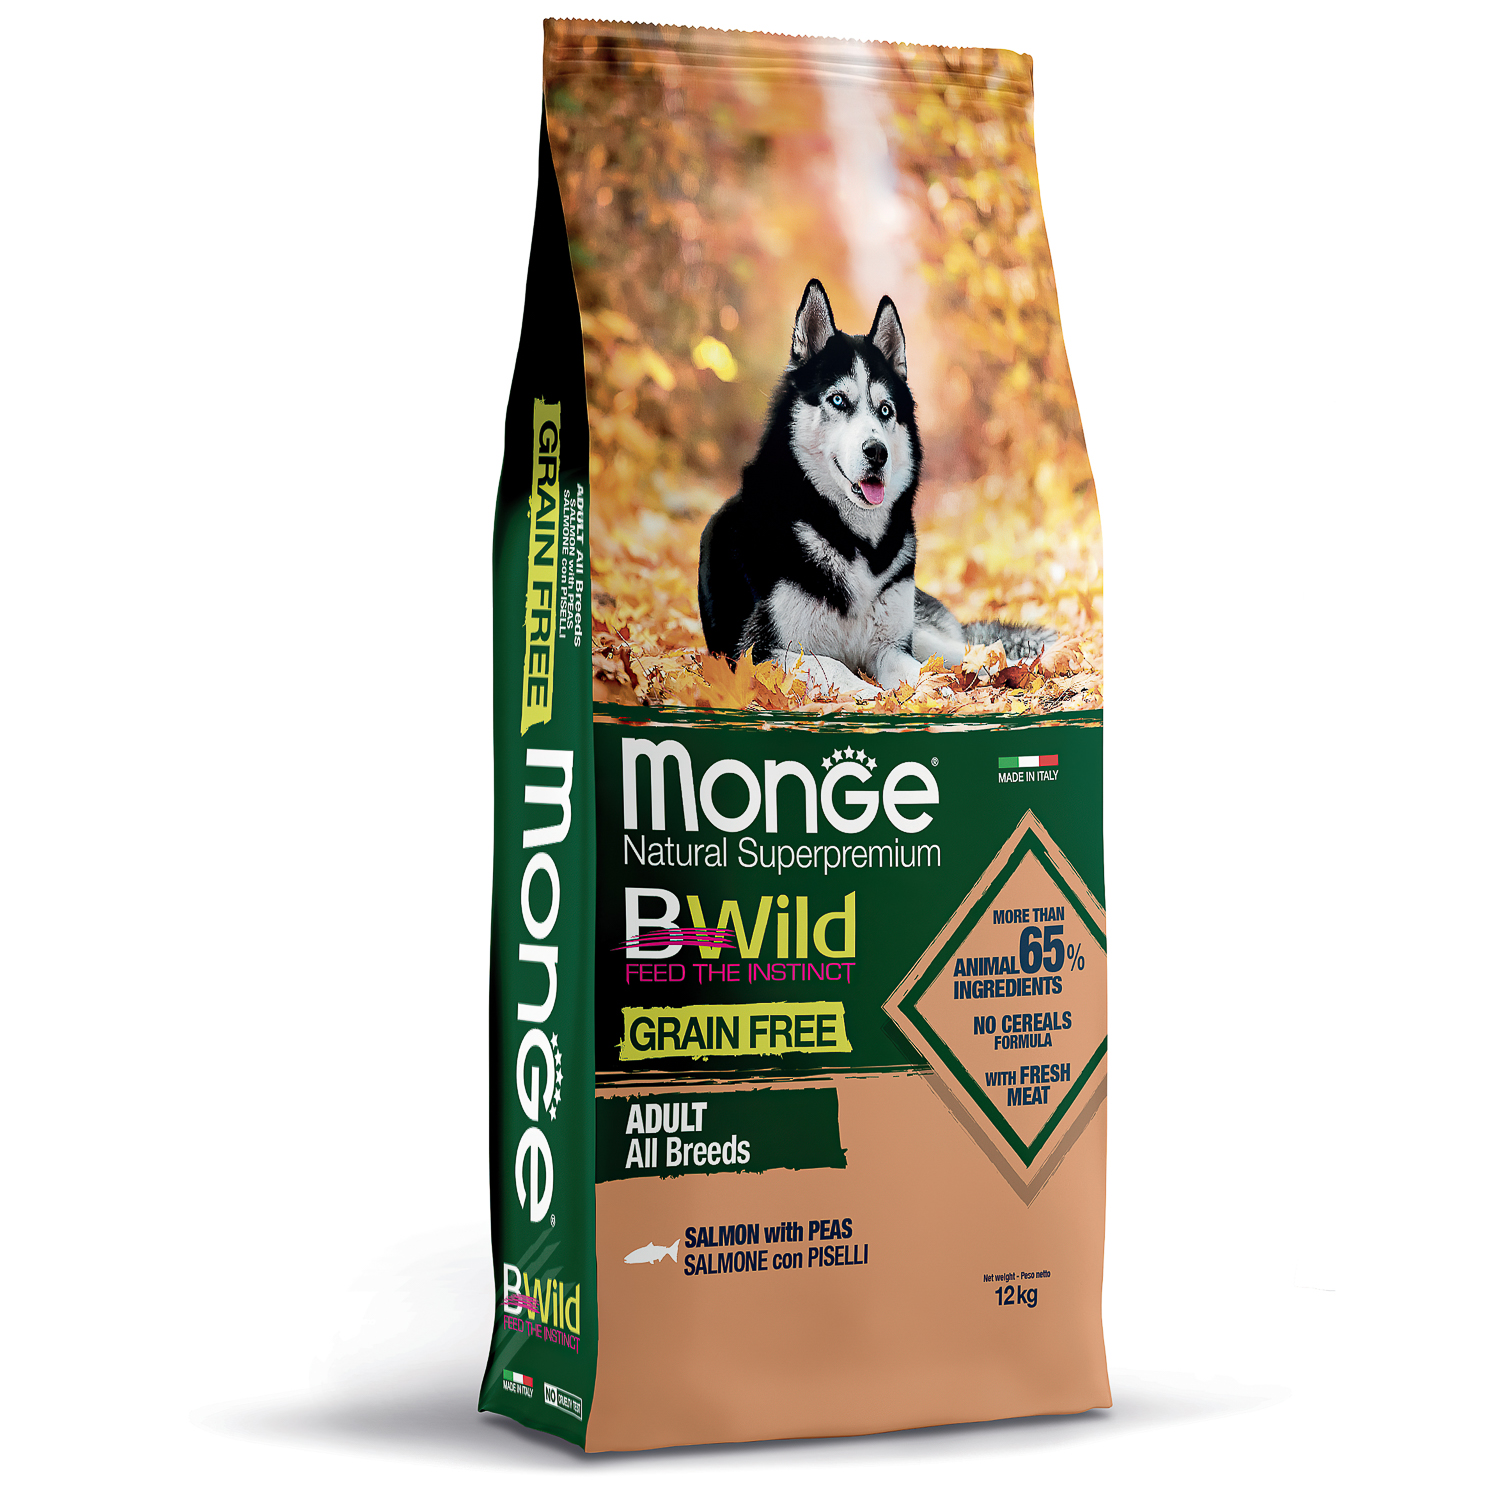 Сухой корм Monge Dog BWild GRAIN FREE для взрослых собак, беззерновой, из лосося 12 кг